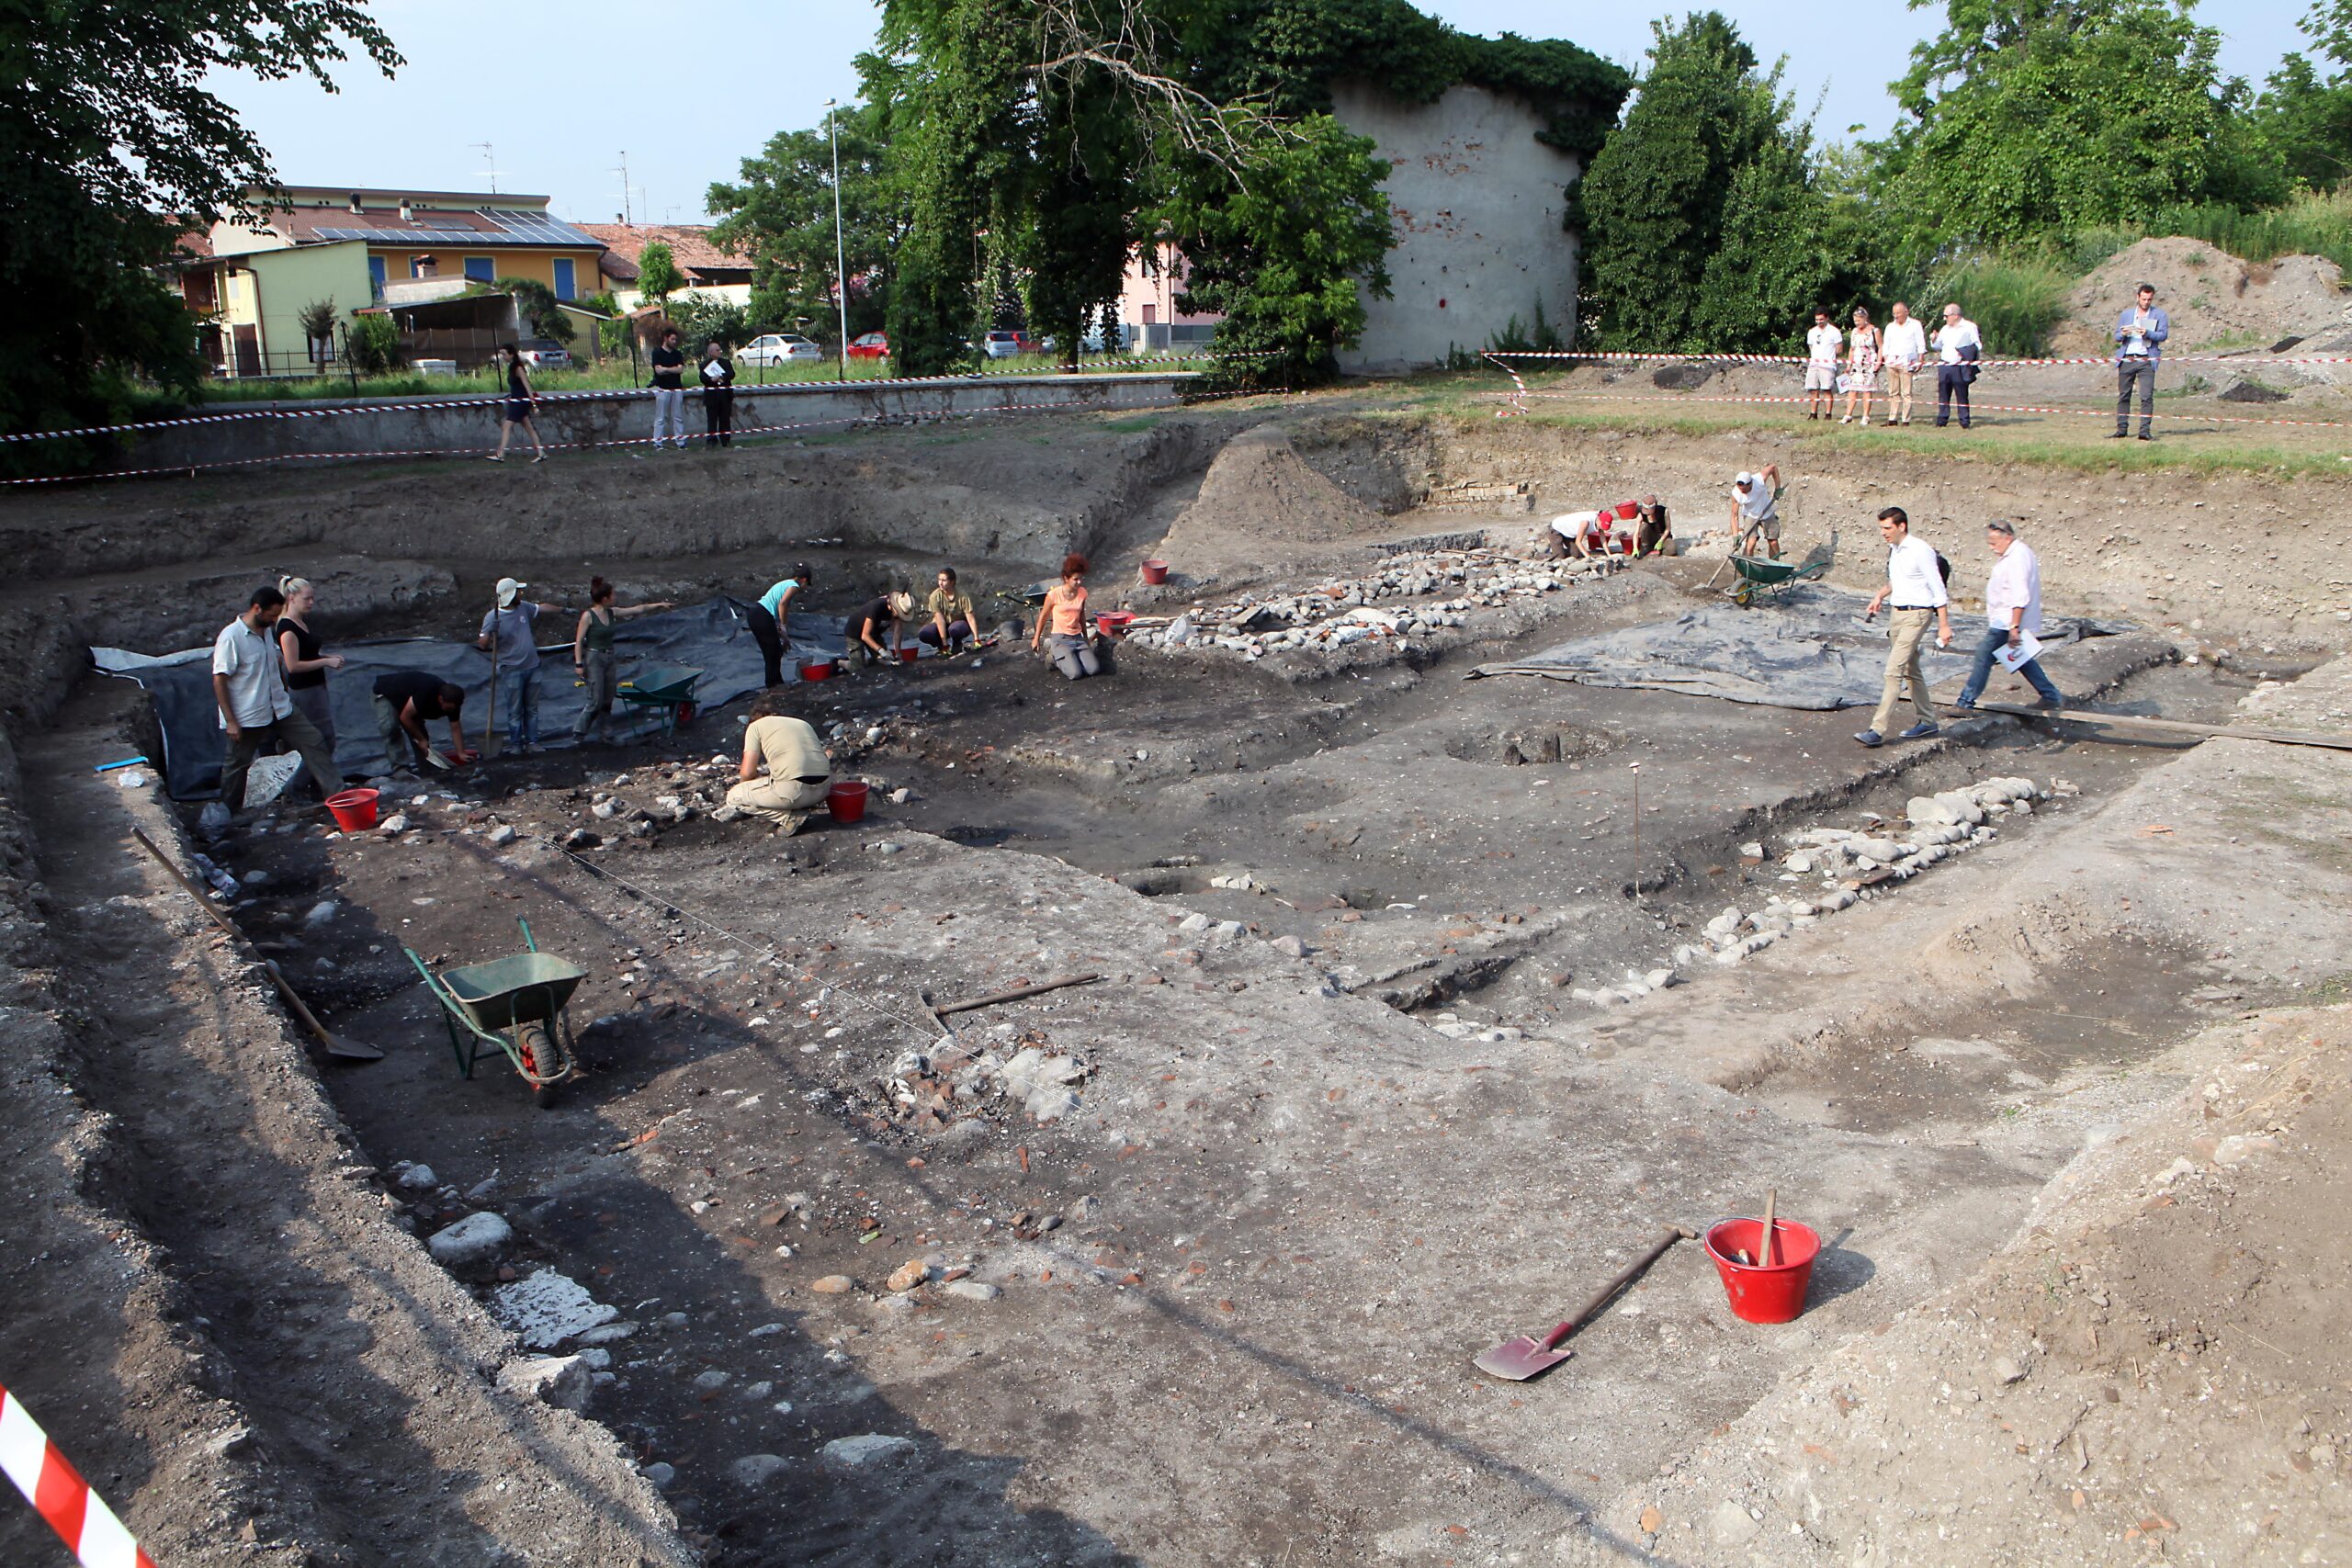 Leno, scavo archeologico 2017 -2 - Copia